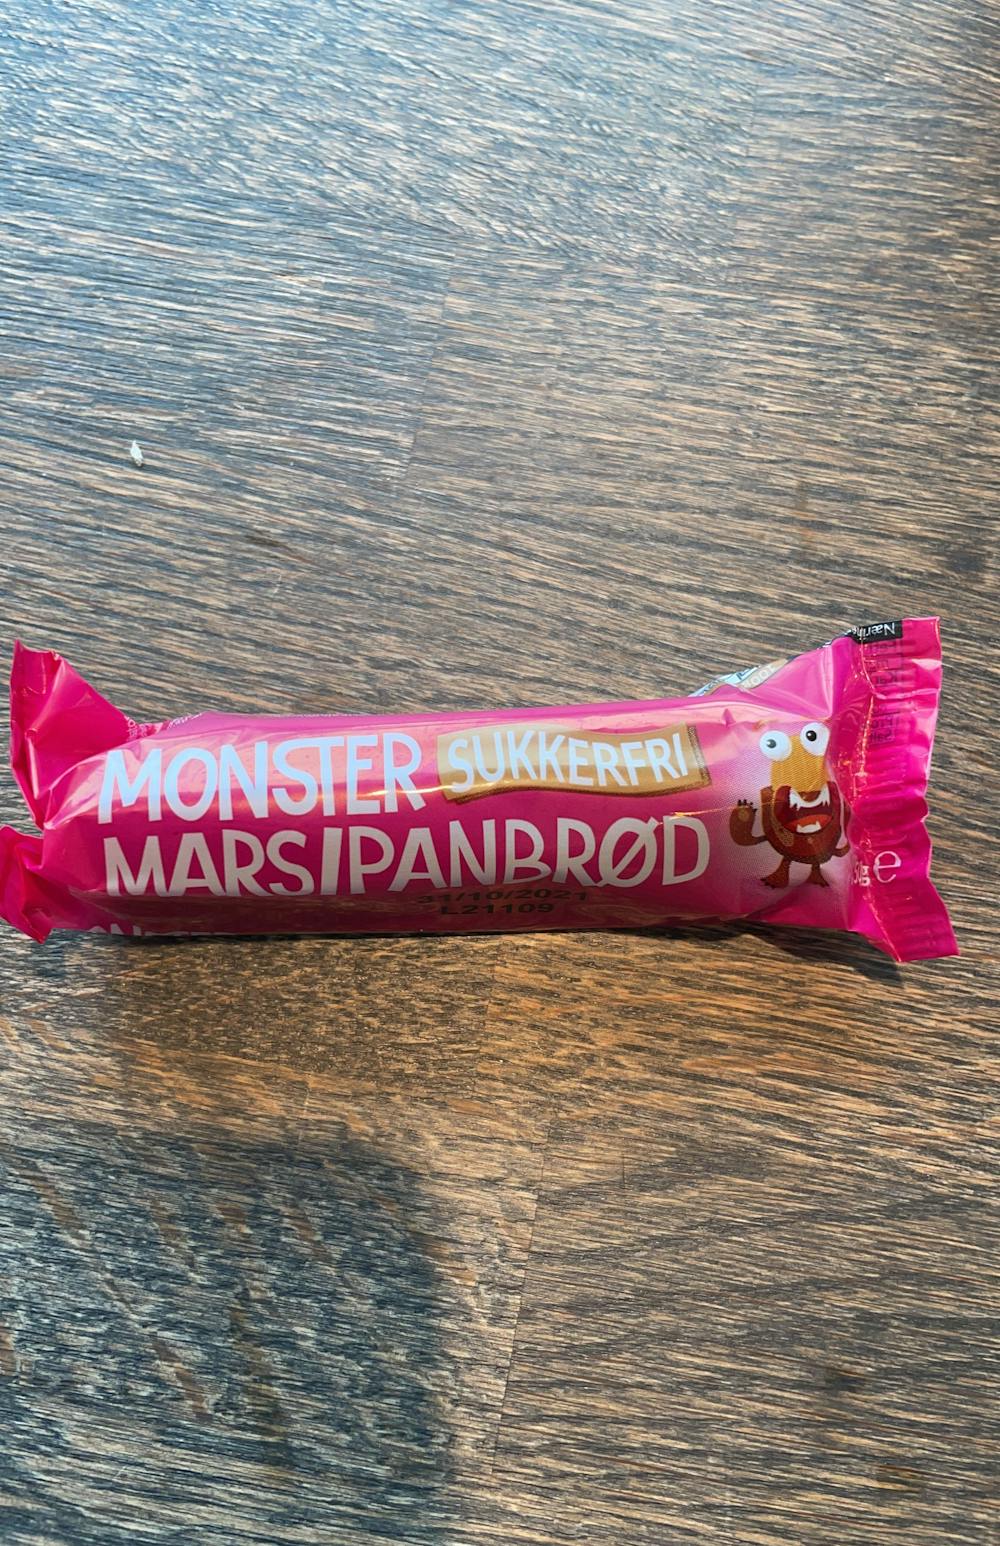 Monster sukkerfri marsipanbrød, Monster snacks